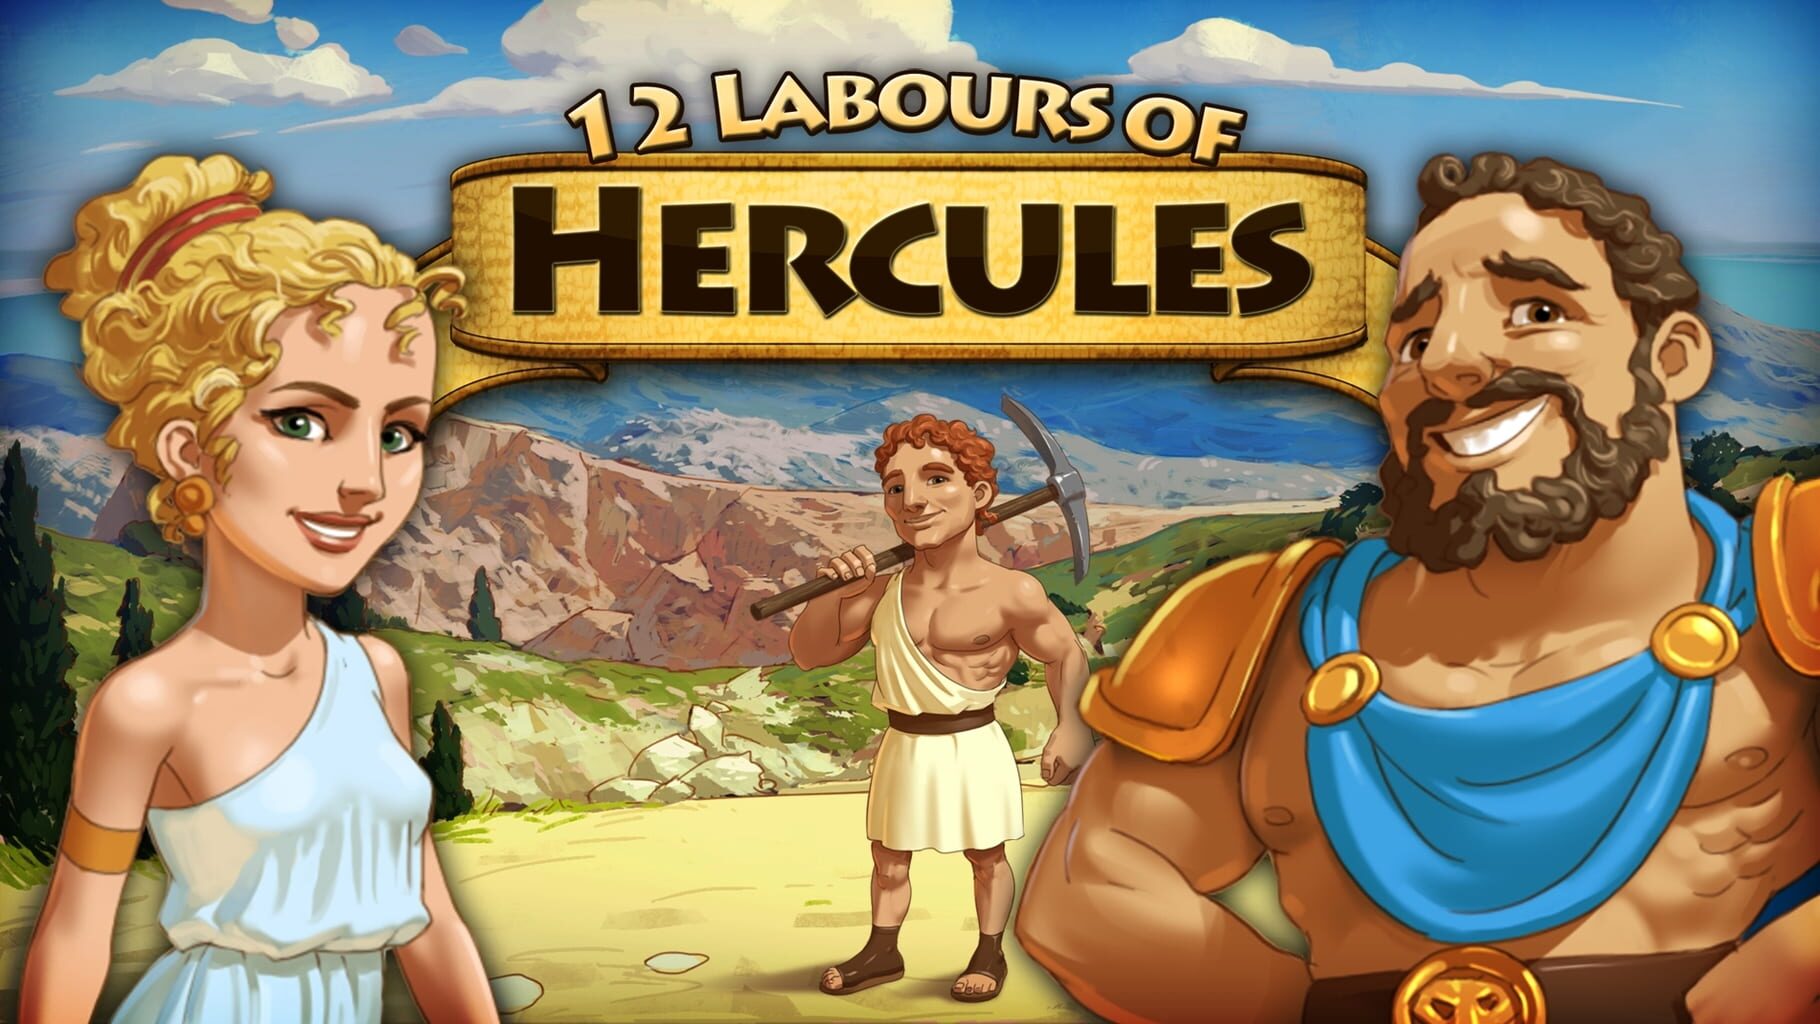 12 Labours of Hercules artwork